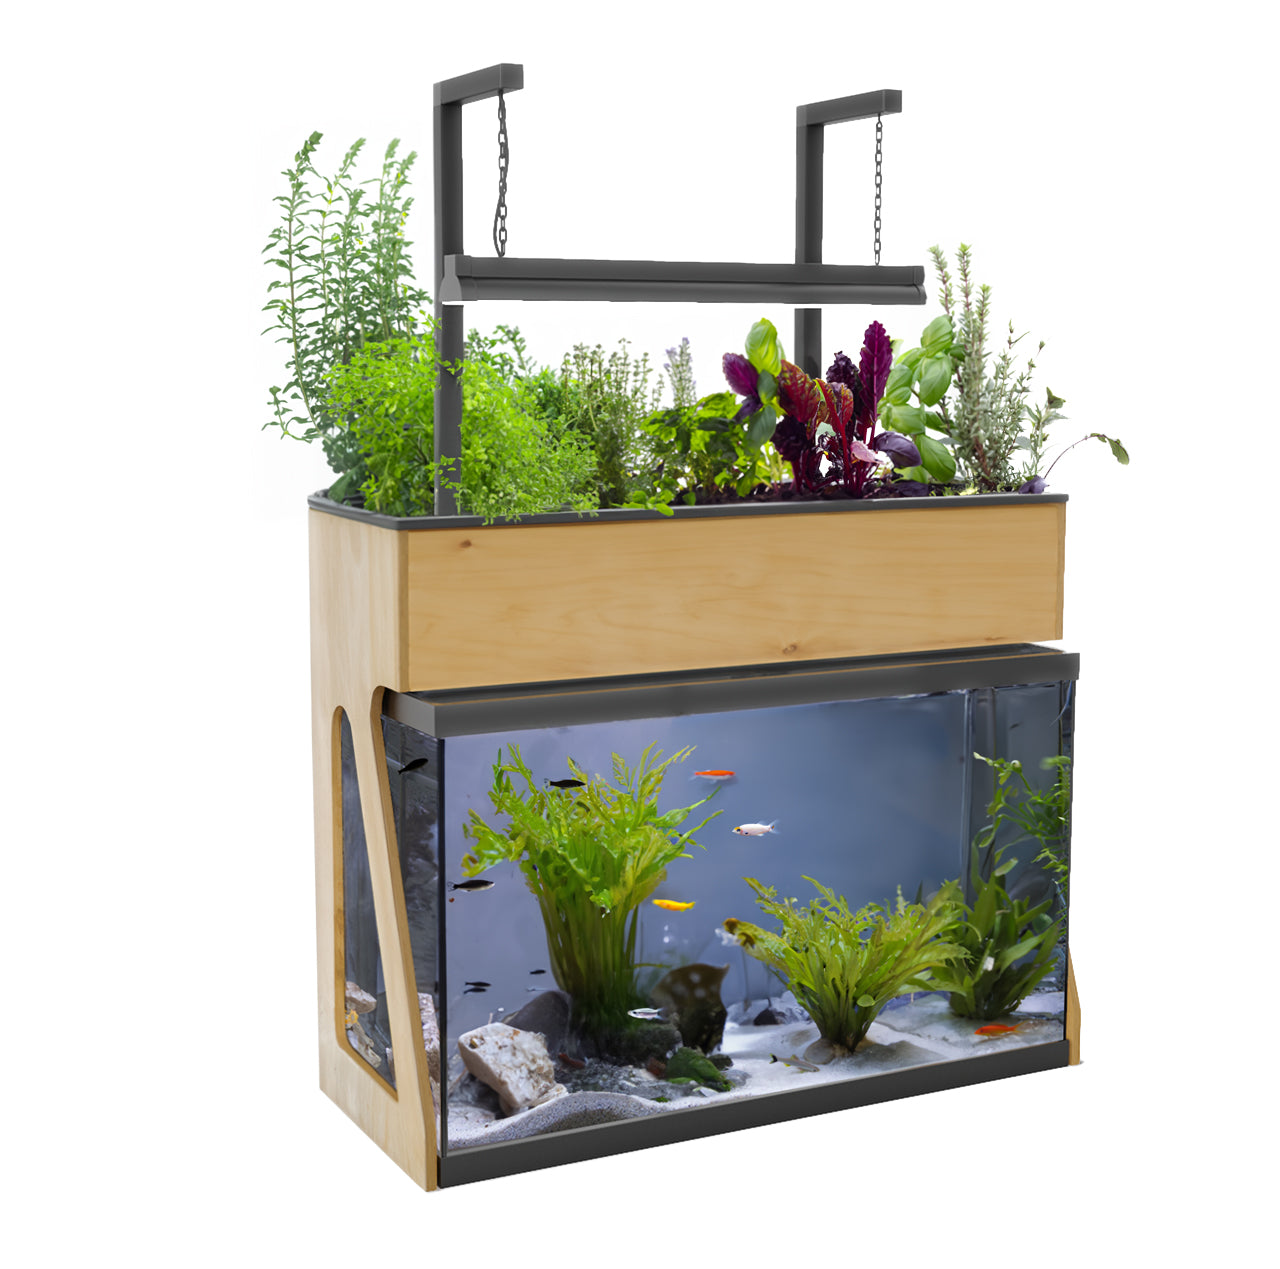 AquaSprouts Garden - 10 Gallon Aquaponics Ecosystem Aquarium